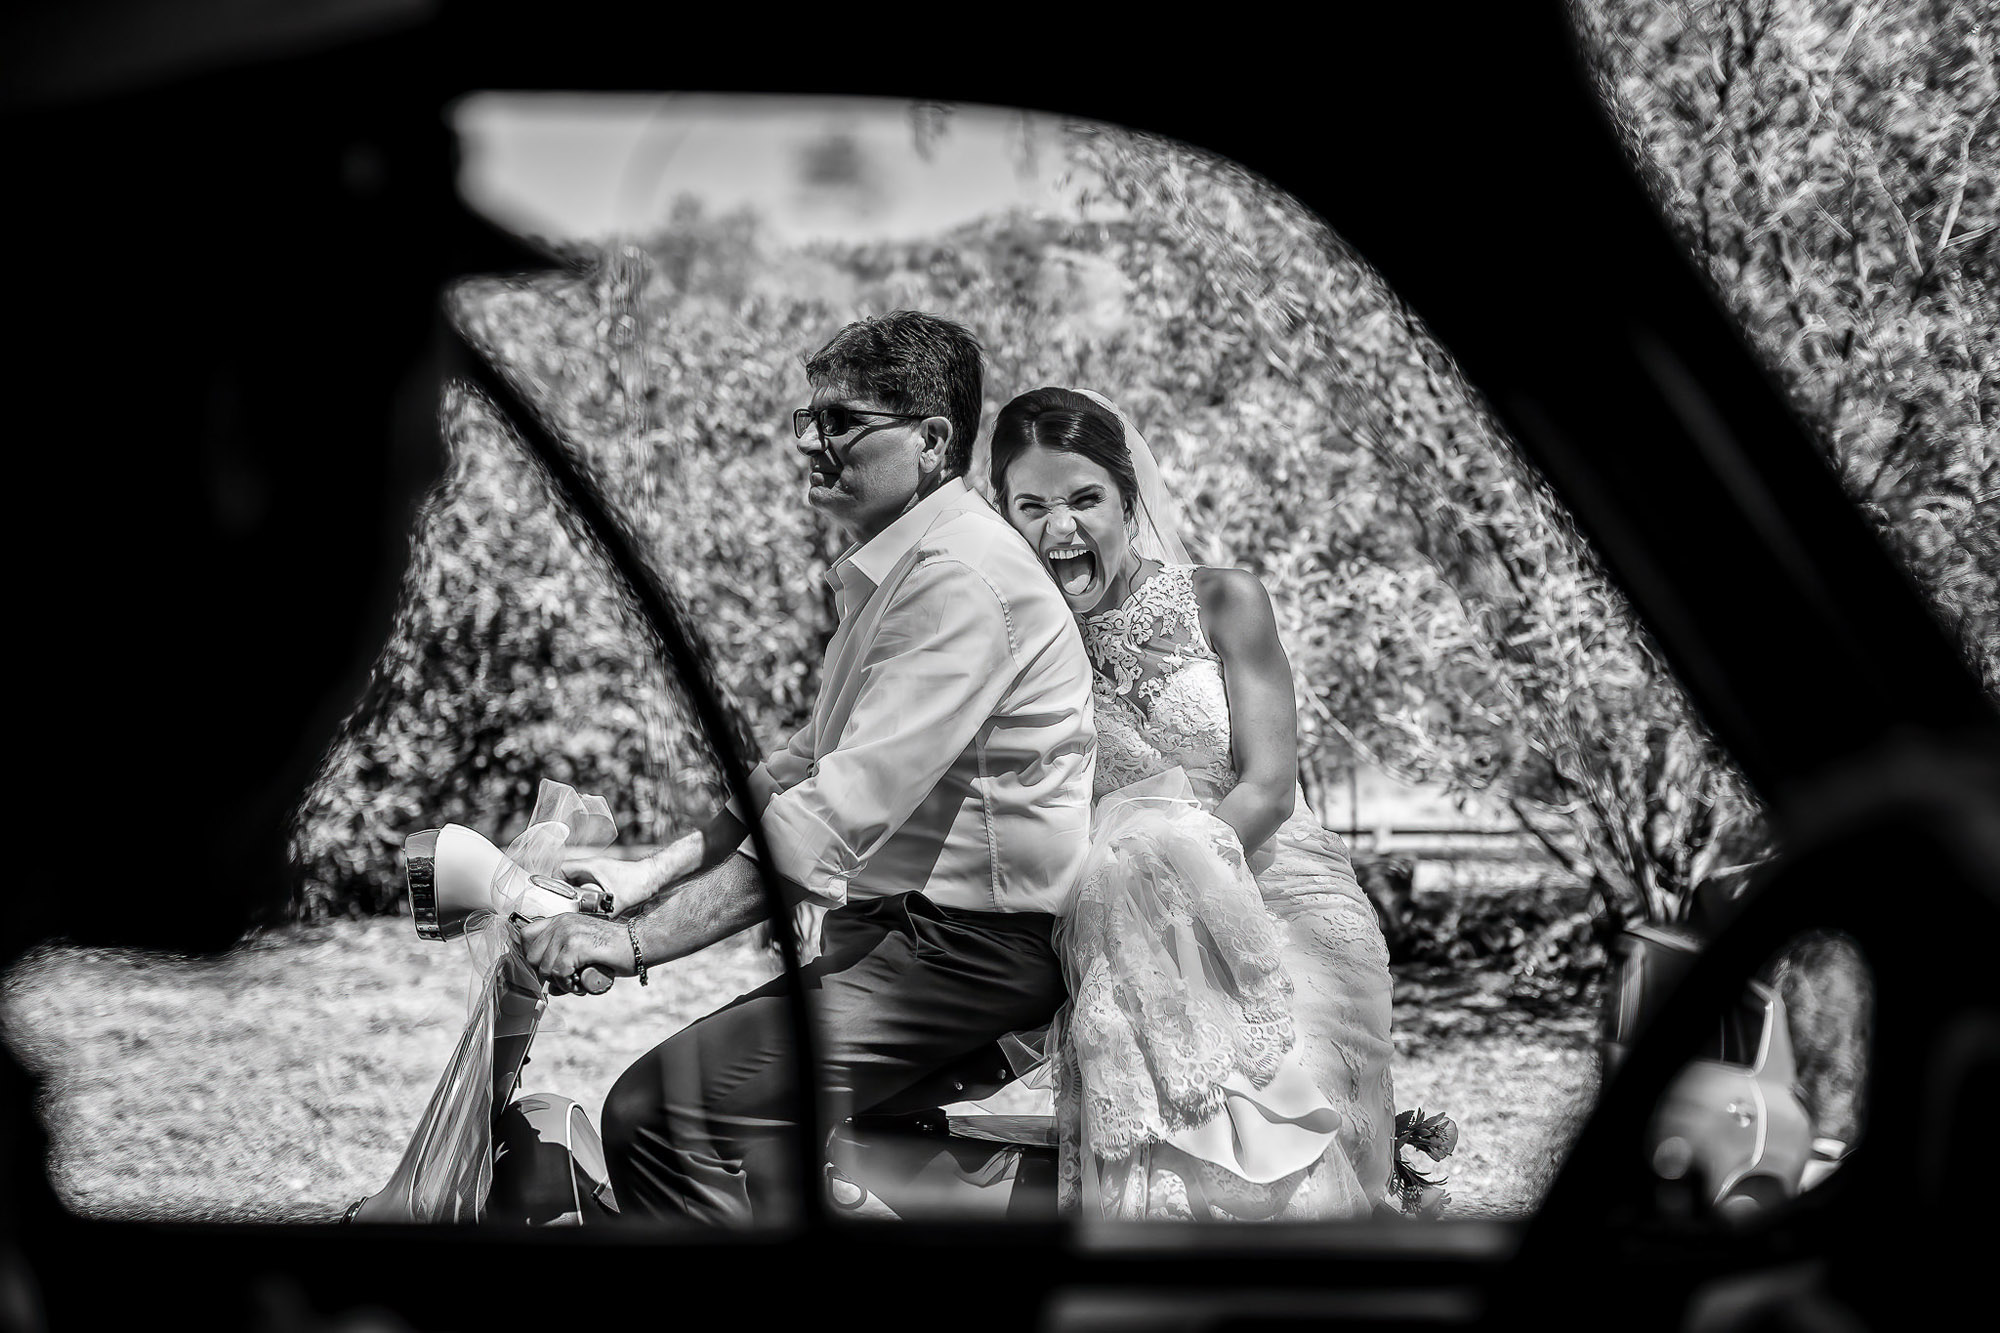 Wedding photo by Matteo Carta